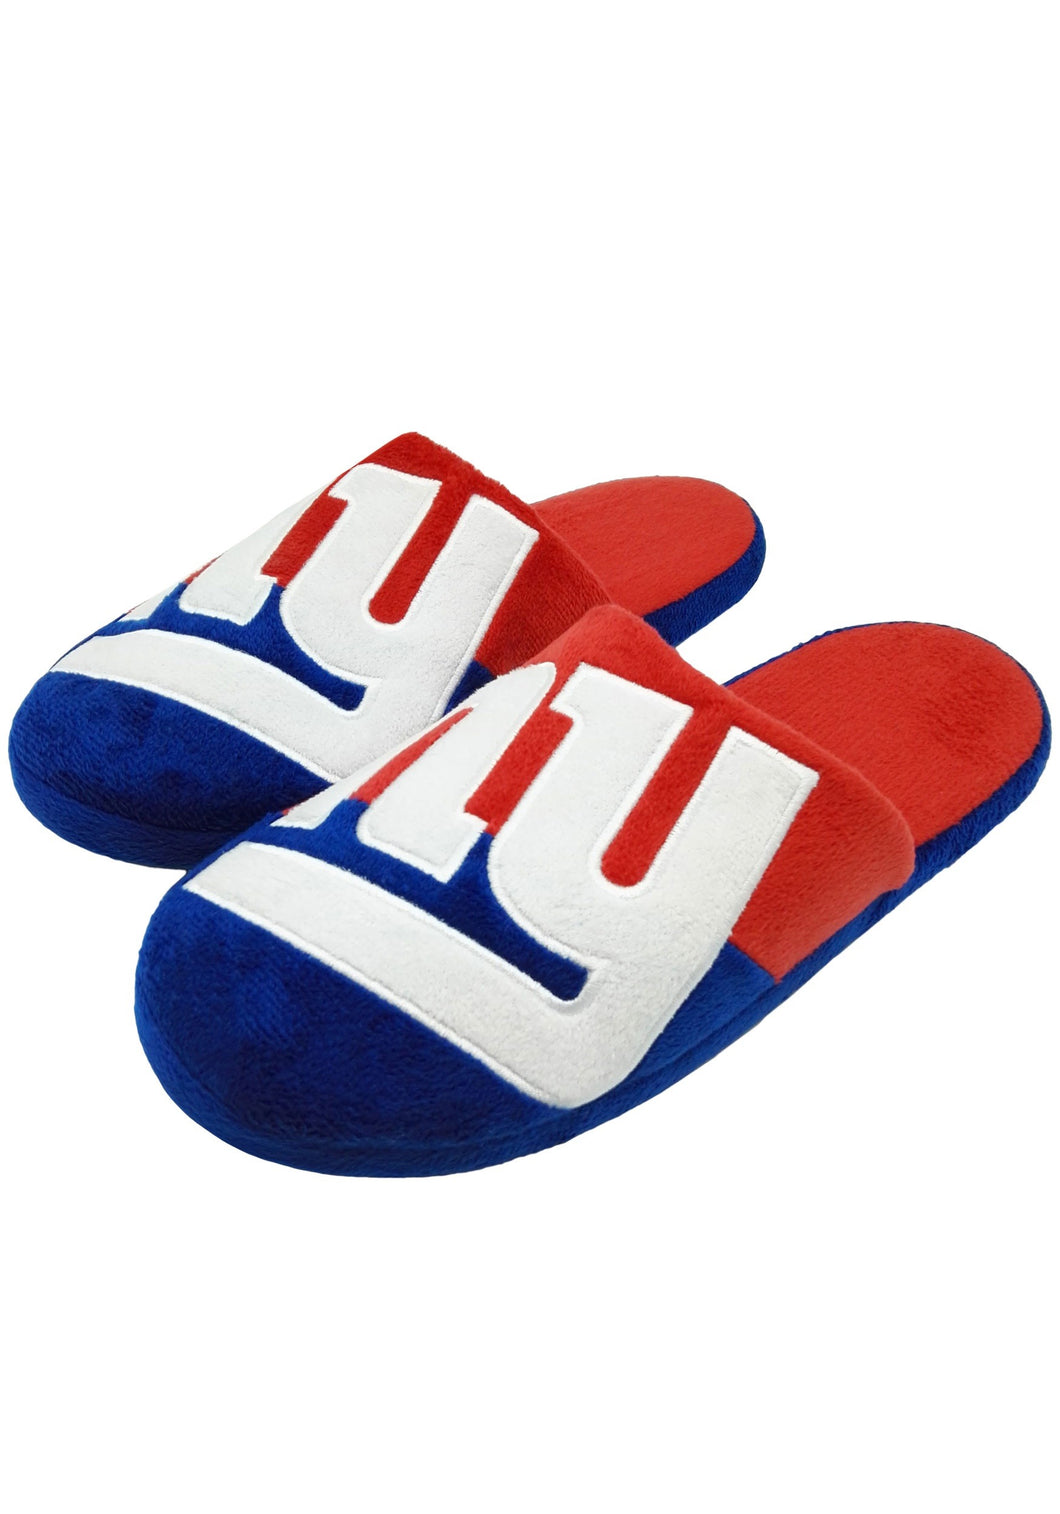 New York Giants NFL Colorblock Slide Slippers